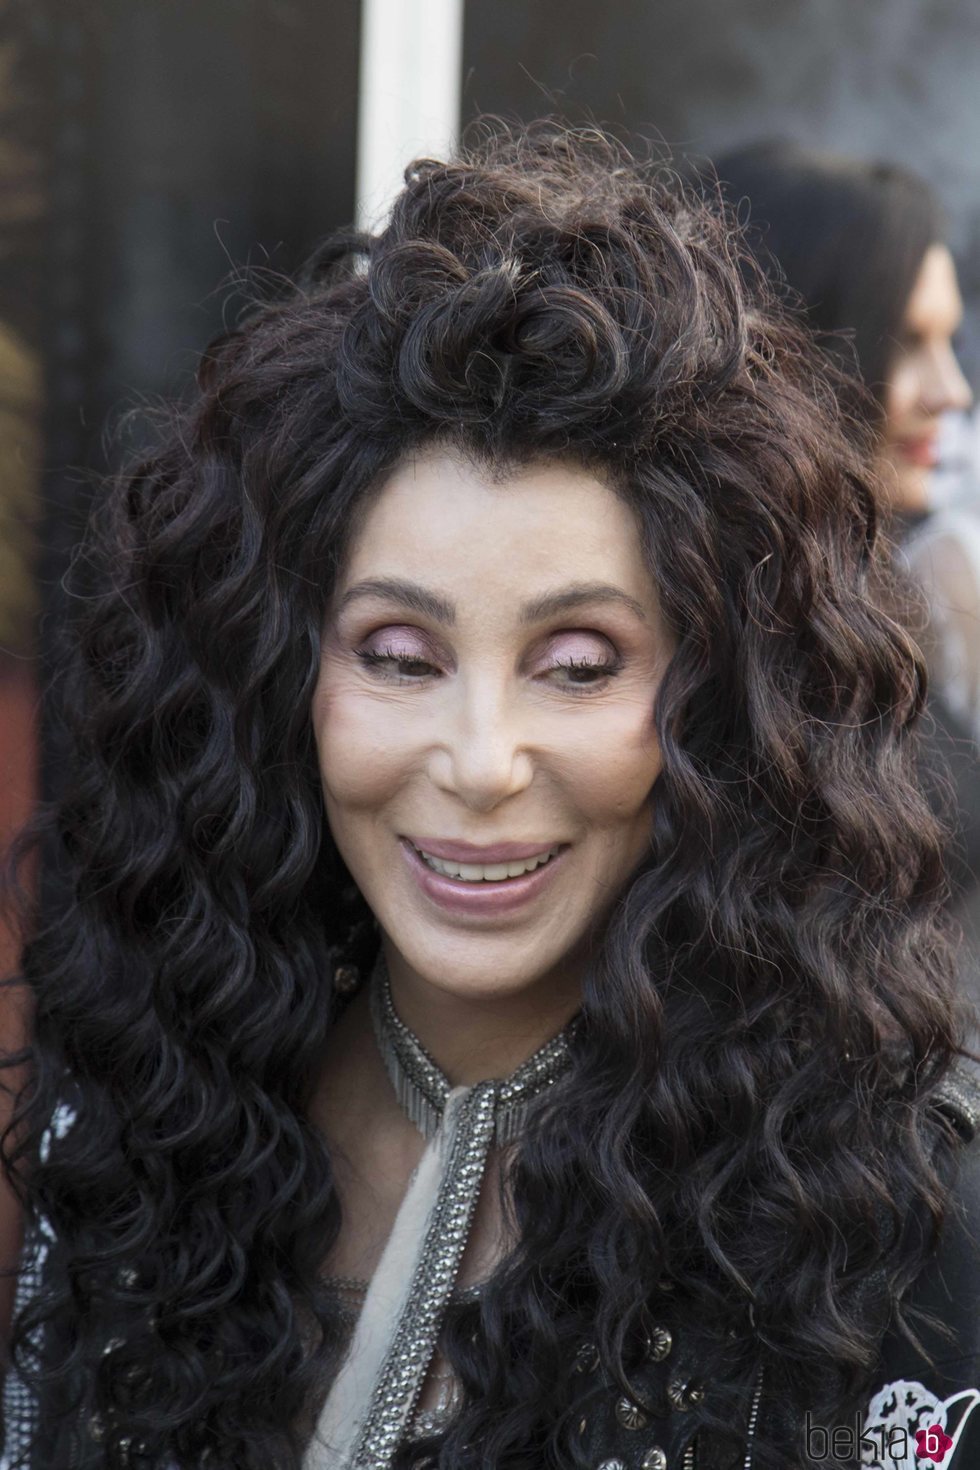 Cher con el cabello ondulado en un evento de animales en Londres 2018